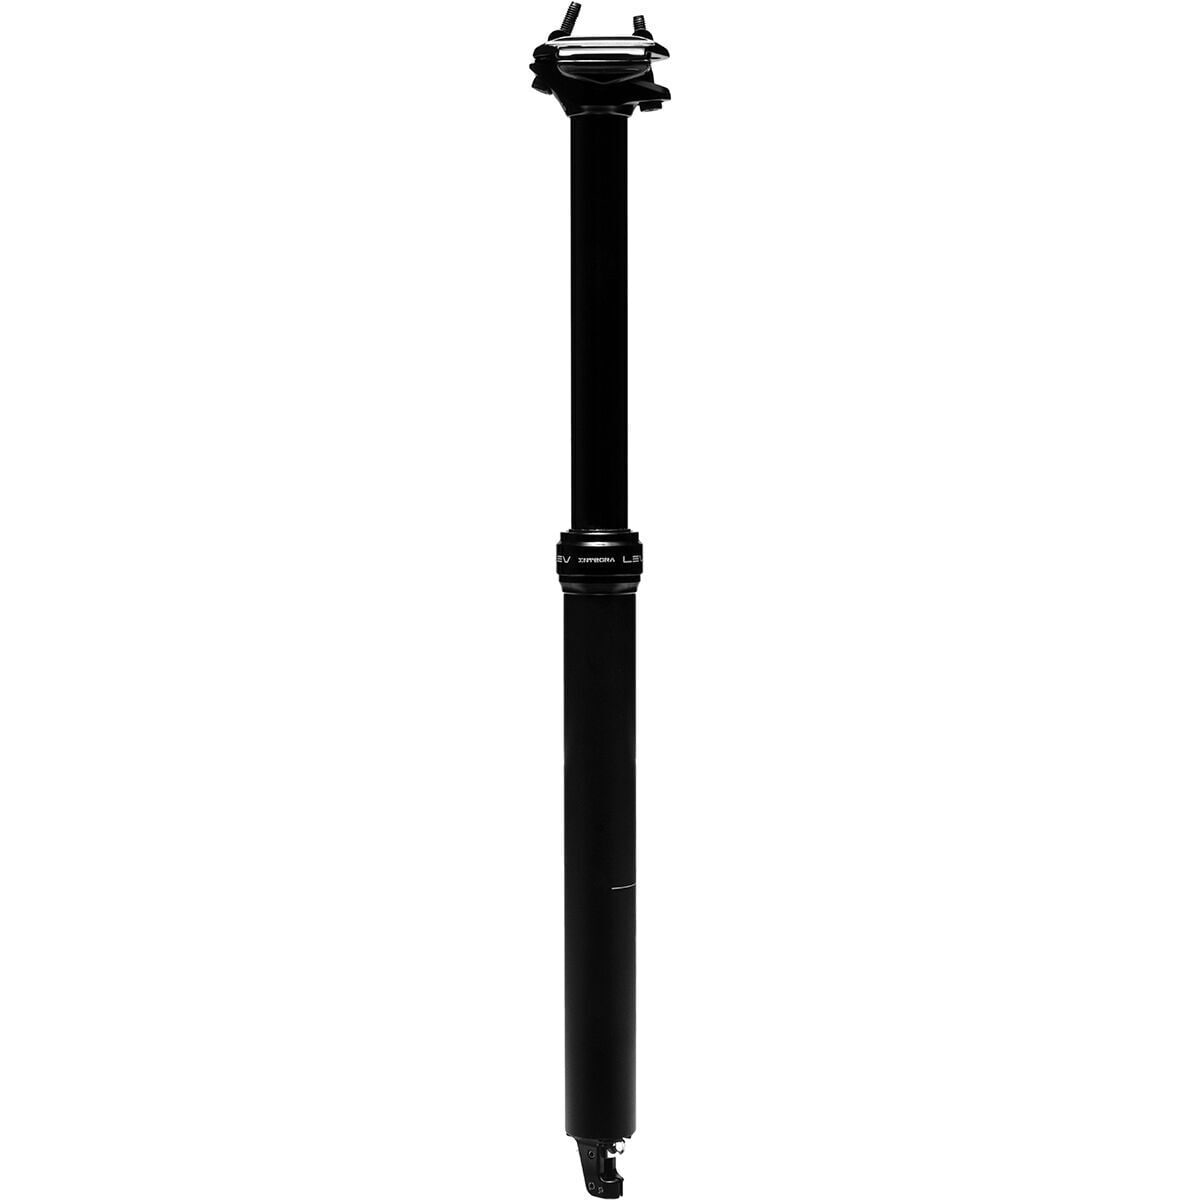 KS Lev Integra Dropper Seatpost Black, 30.9mmx150mm